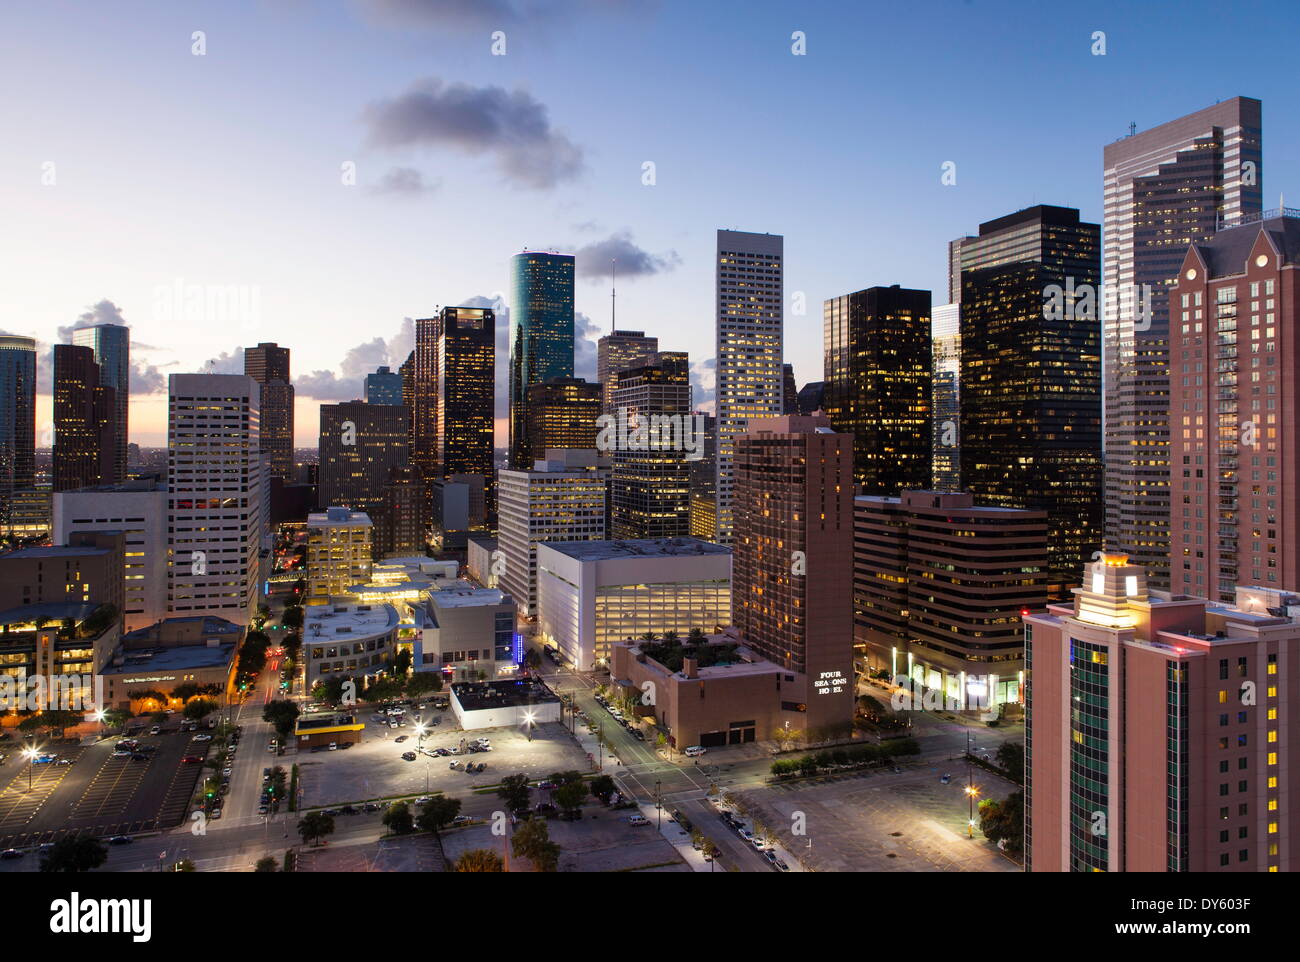 Le centre-ville de ville, Houston, Texas, États-Unis d'Amérique, Amérique du Nord Banque D'Images